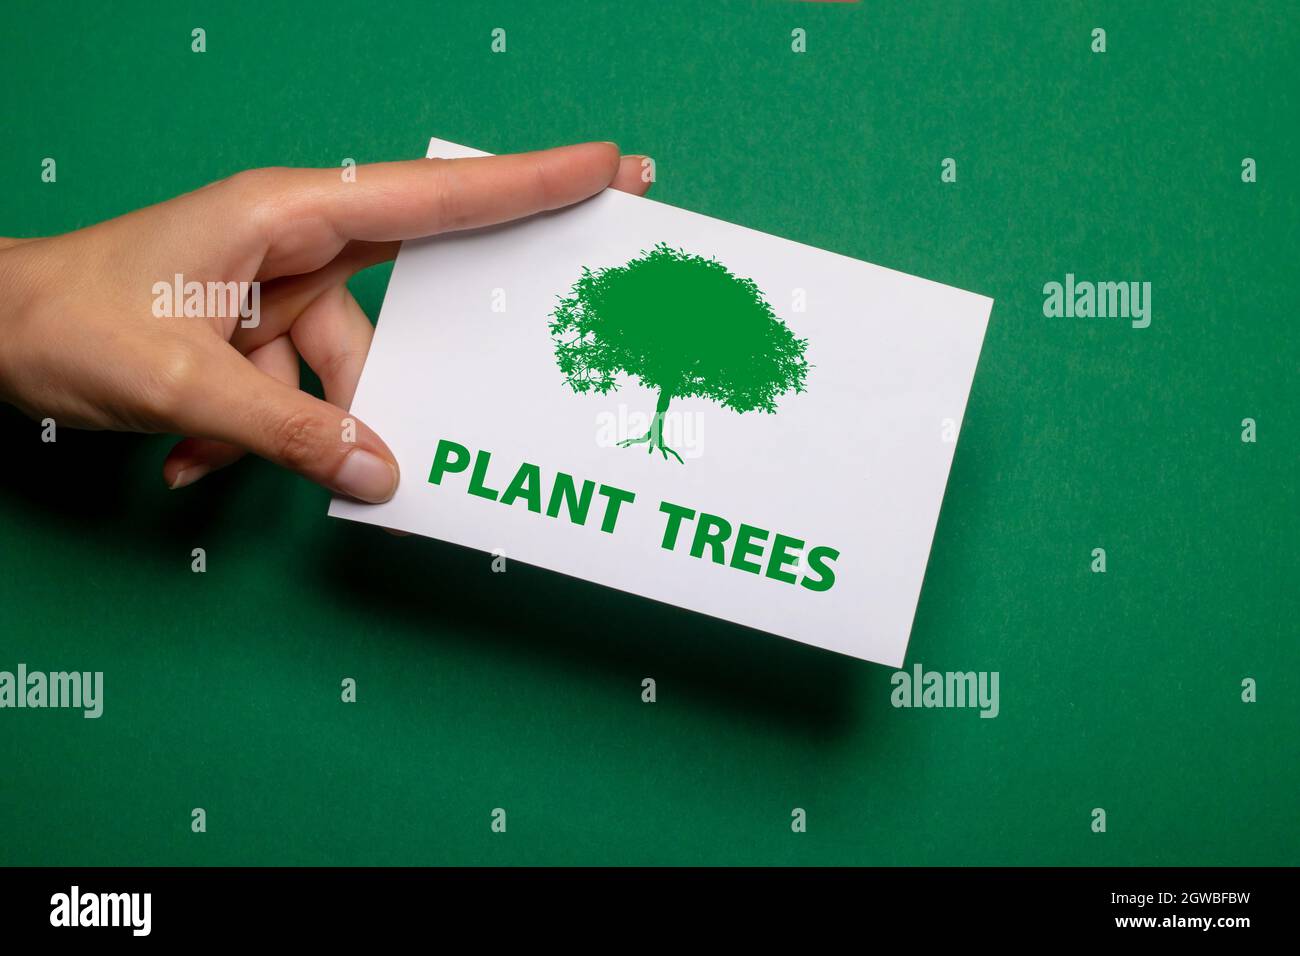 la main femelle tient un morceau de papier avec l'inscription arbres végétaux en vert écrit sur fond vert fort carton Banque D'Images